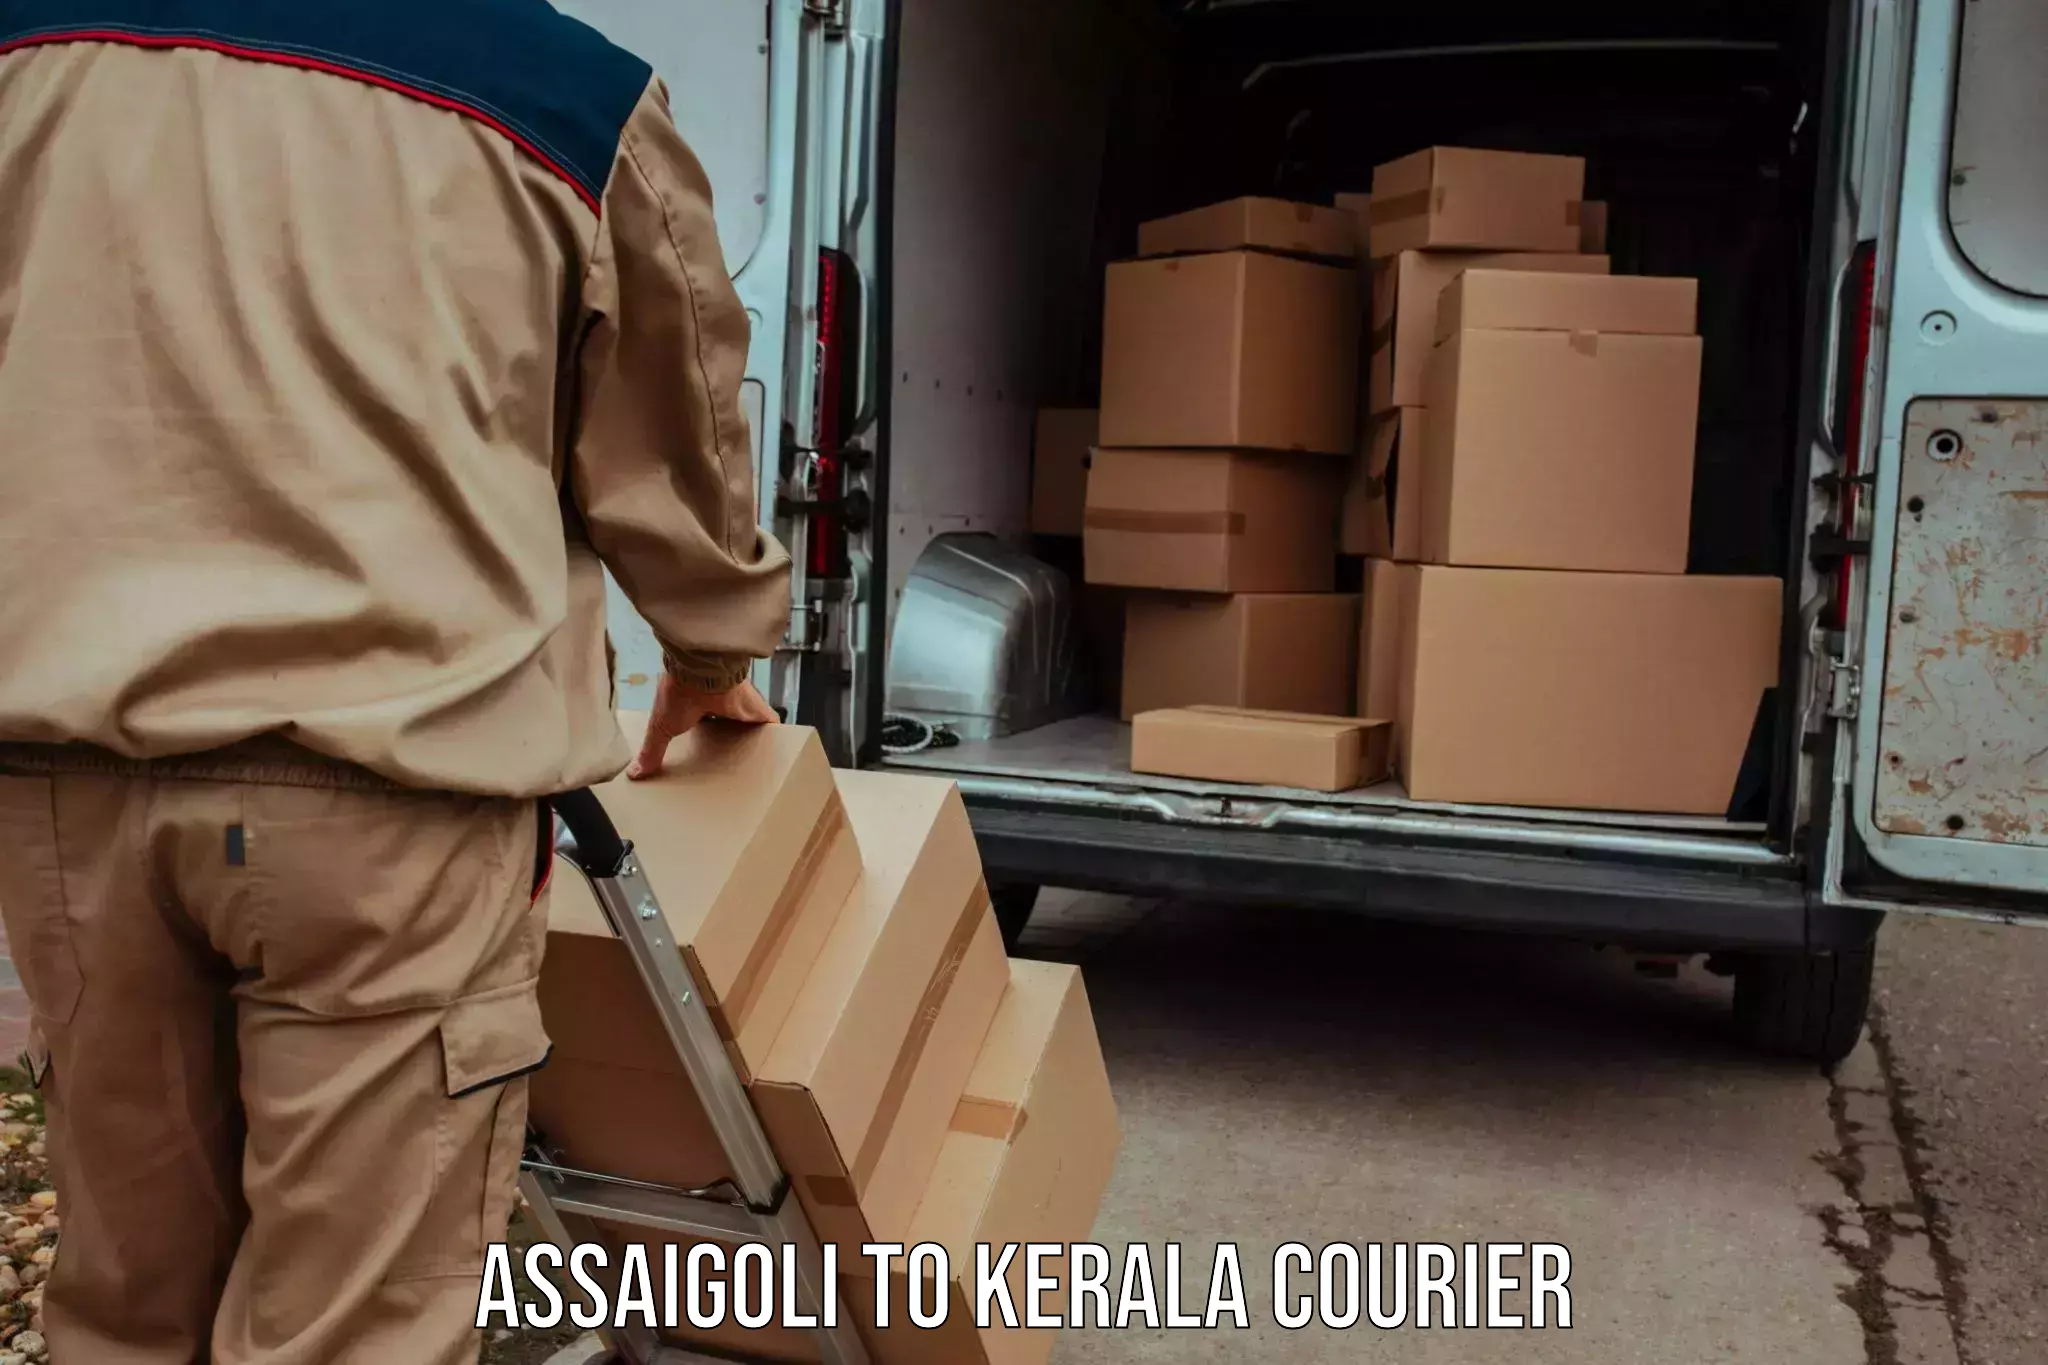 Express postal services Assaigoli to Adimali